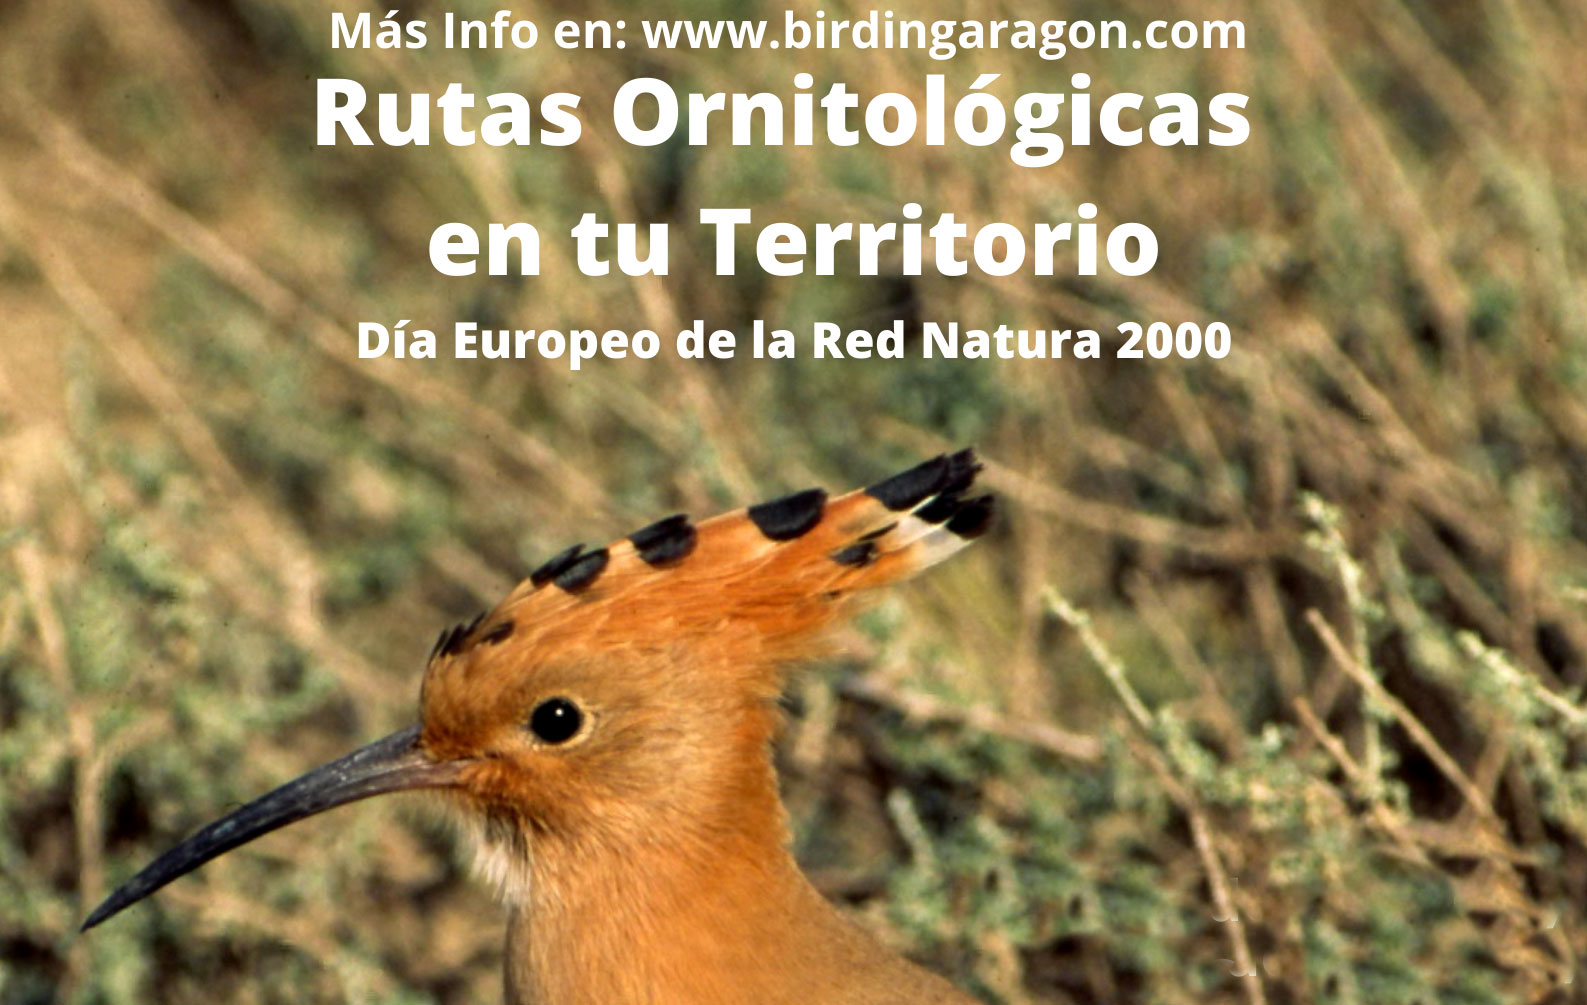 Birding Aragón comienza en el Somontano sus eventos ornitológicos